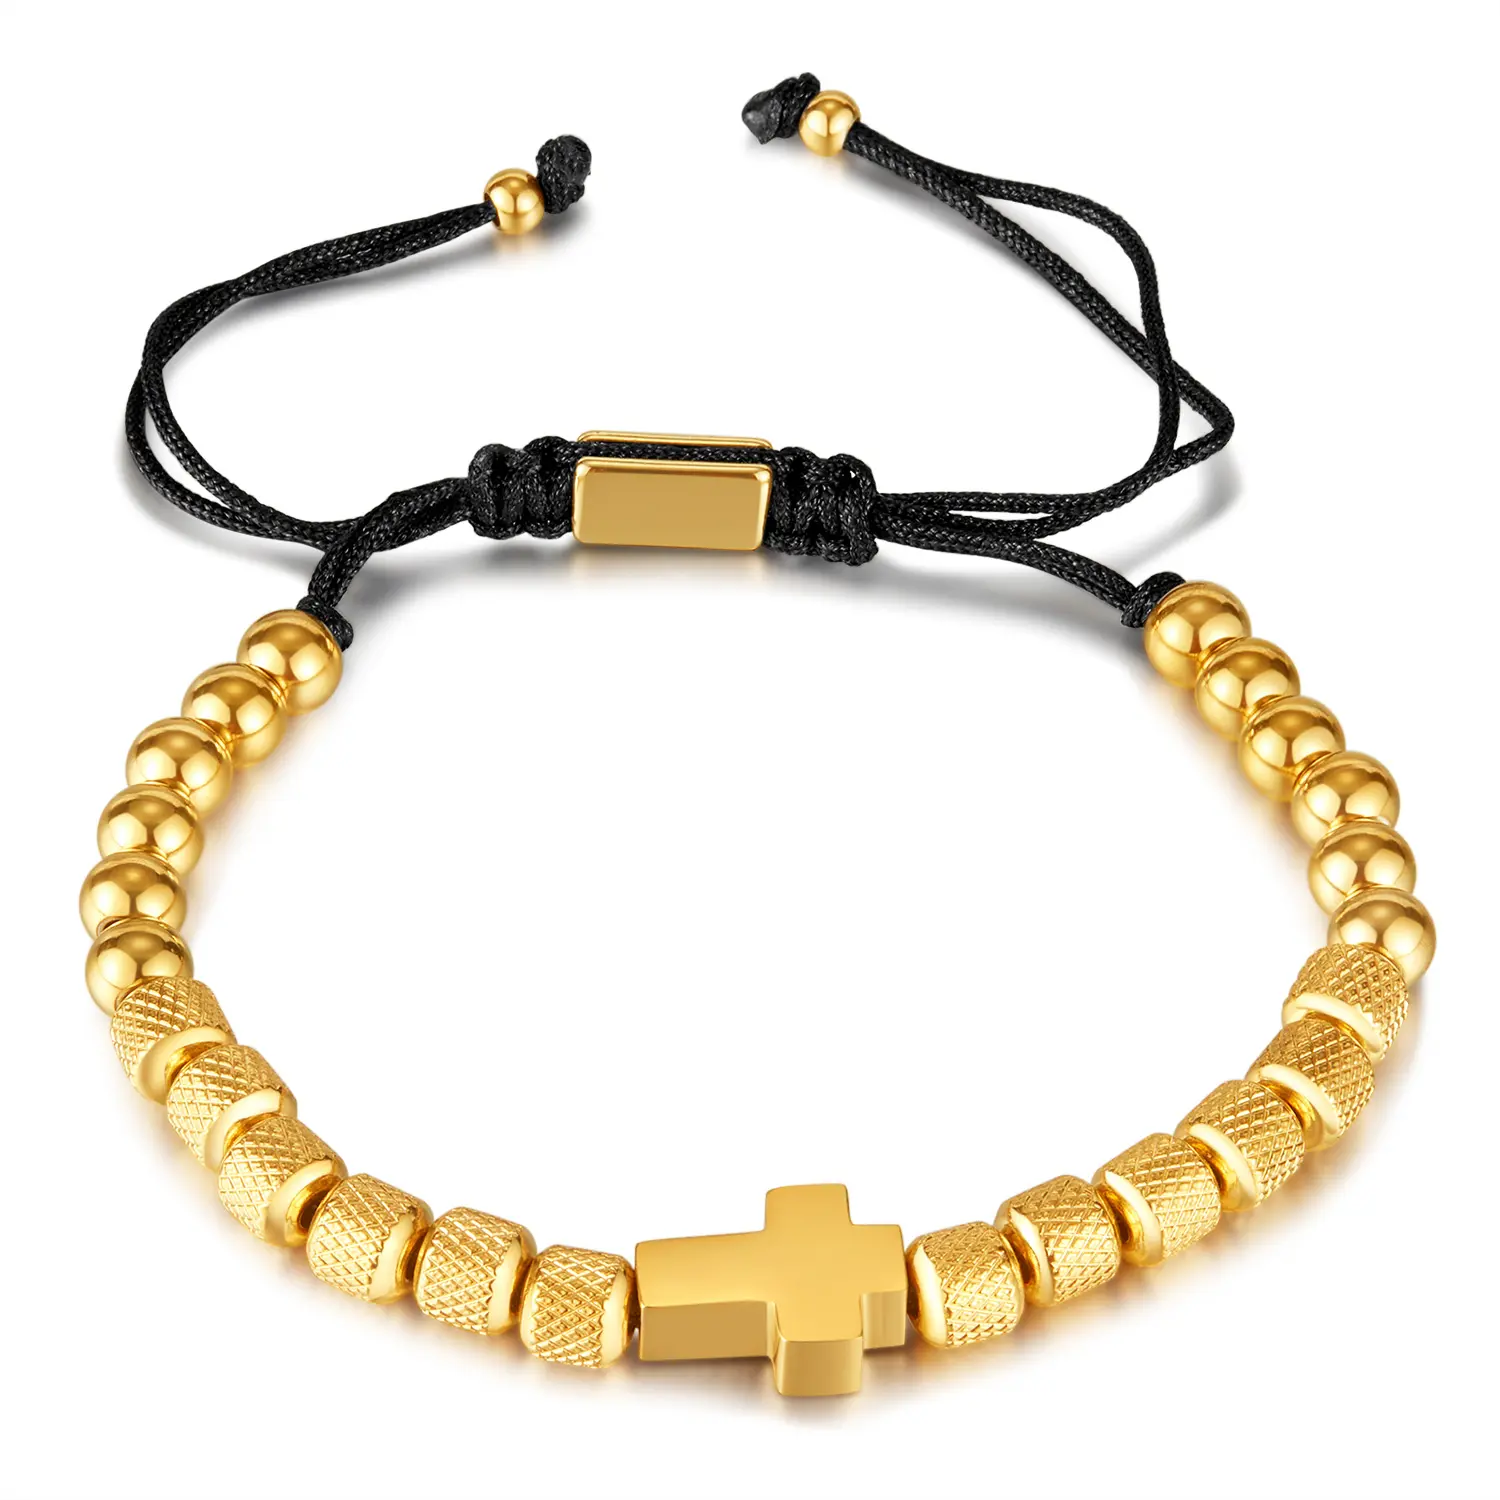 Pulseira de Amizade para homens, pulseira de aço inoxidável banhada a ouro 18K com logotipo personalizado, miçangas e pingente cruzado, novo design